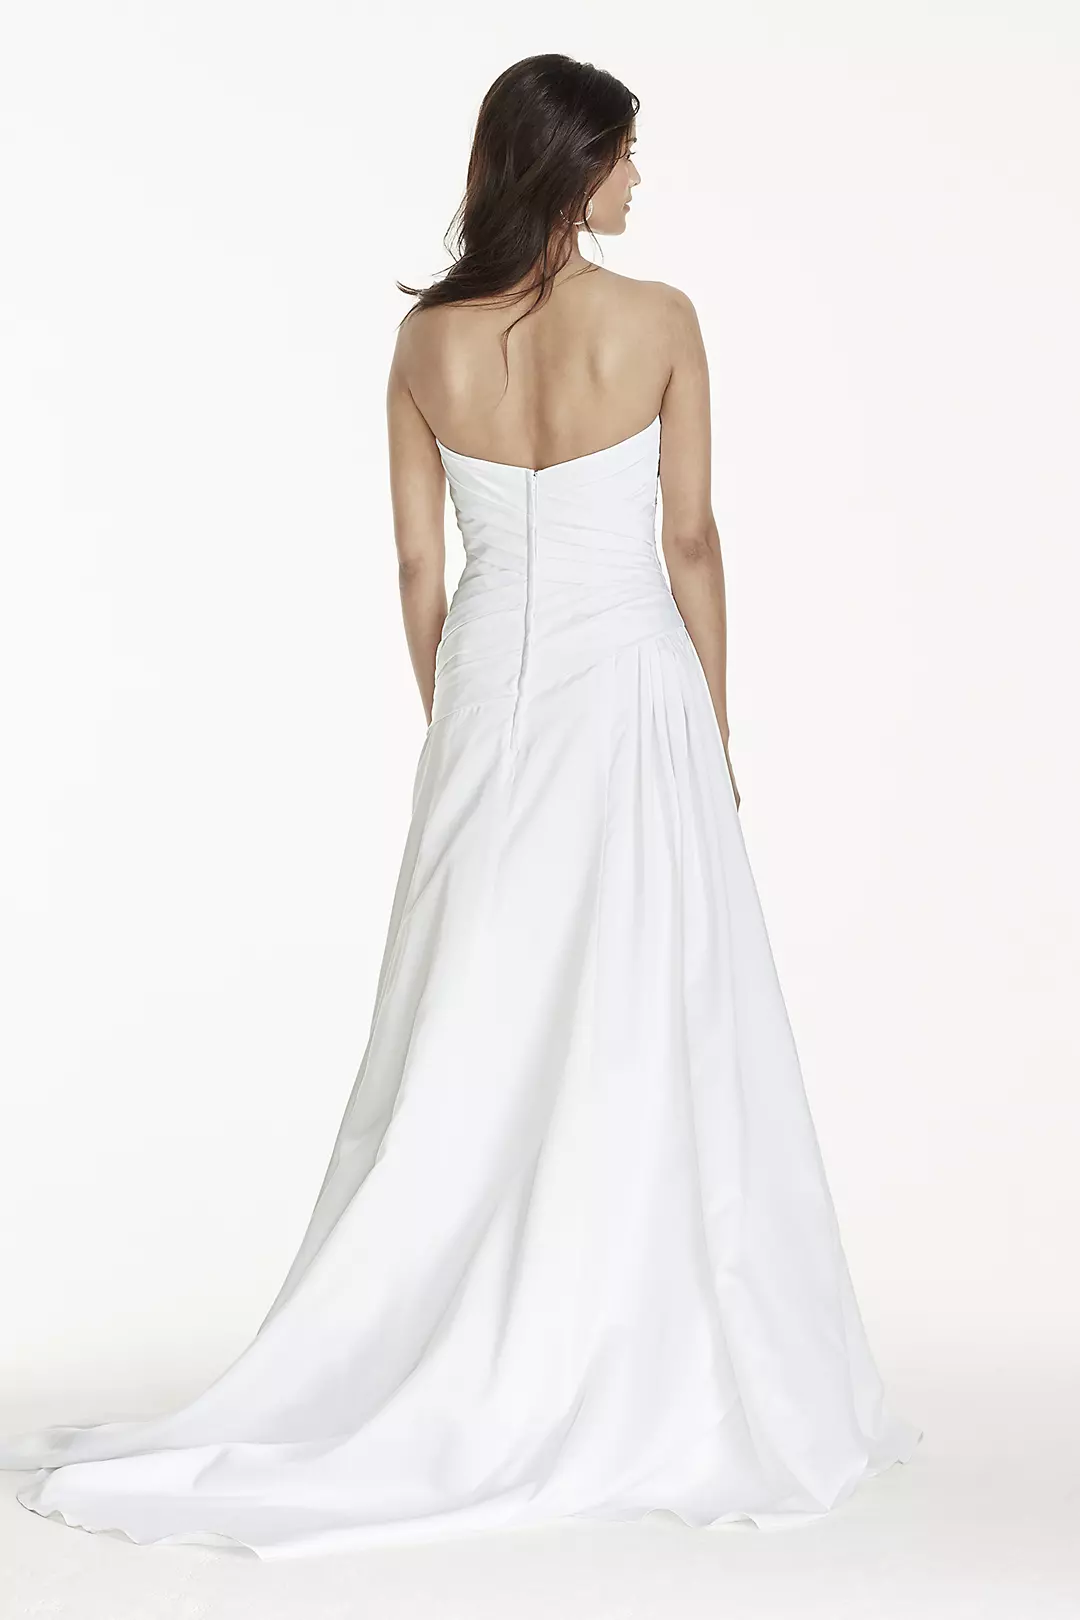 Strapless A-Line Drop Waist Wedding Dress Image 2